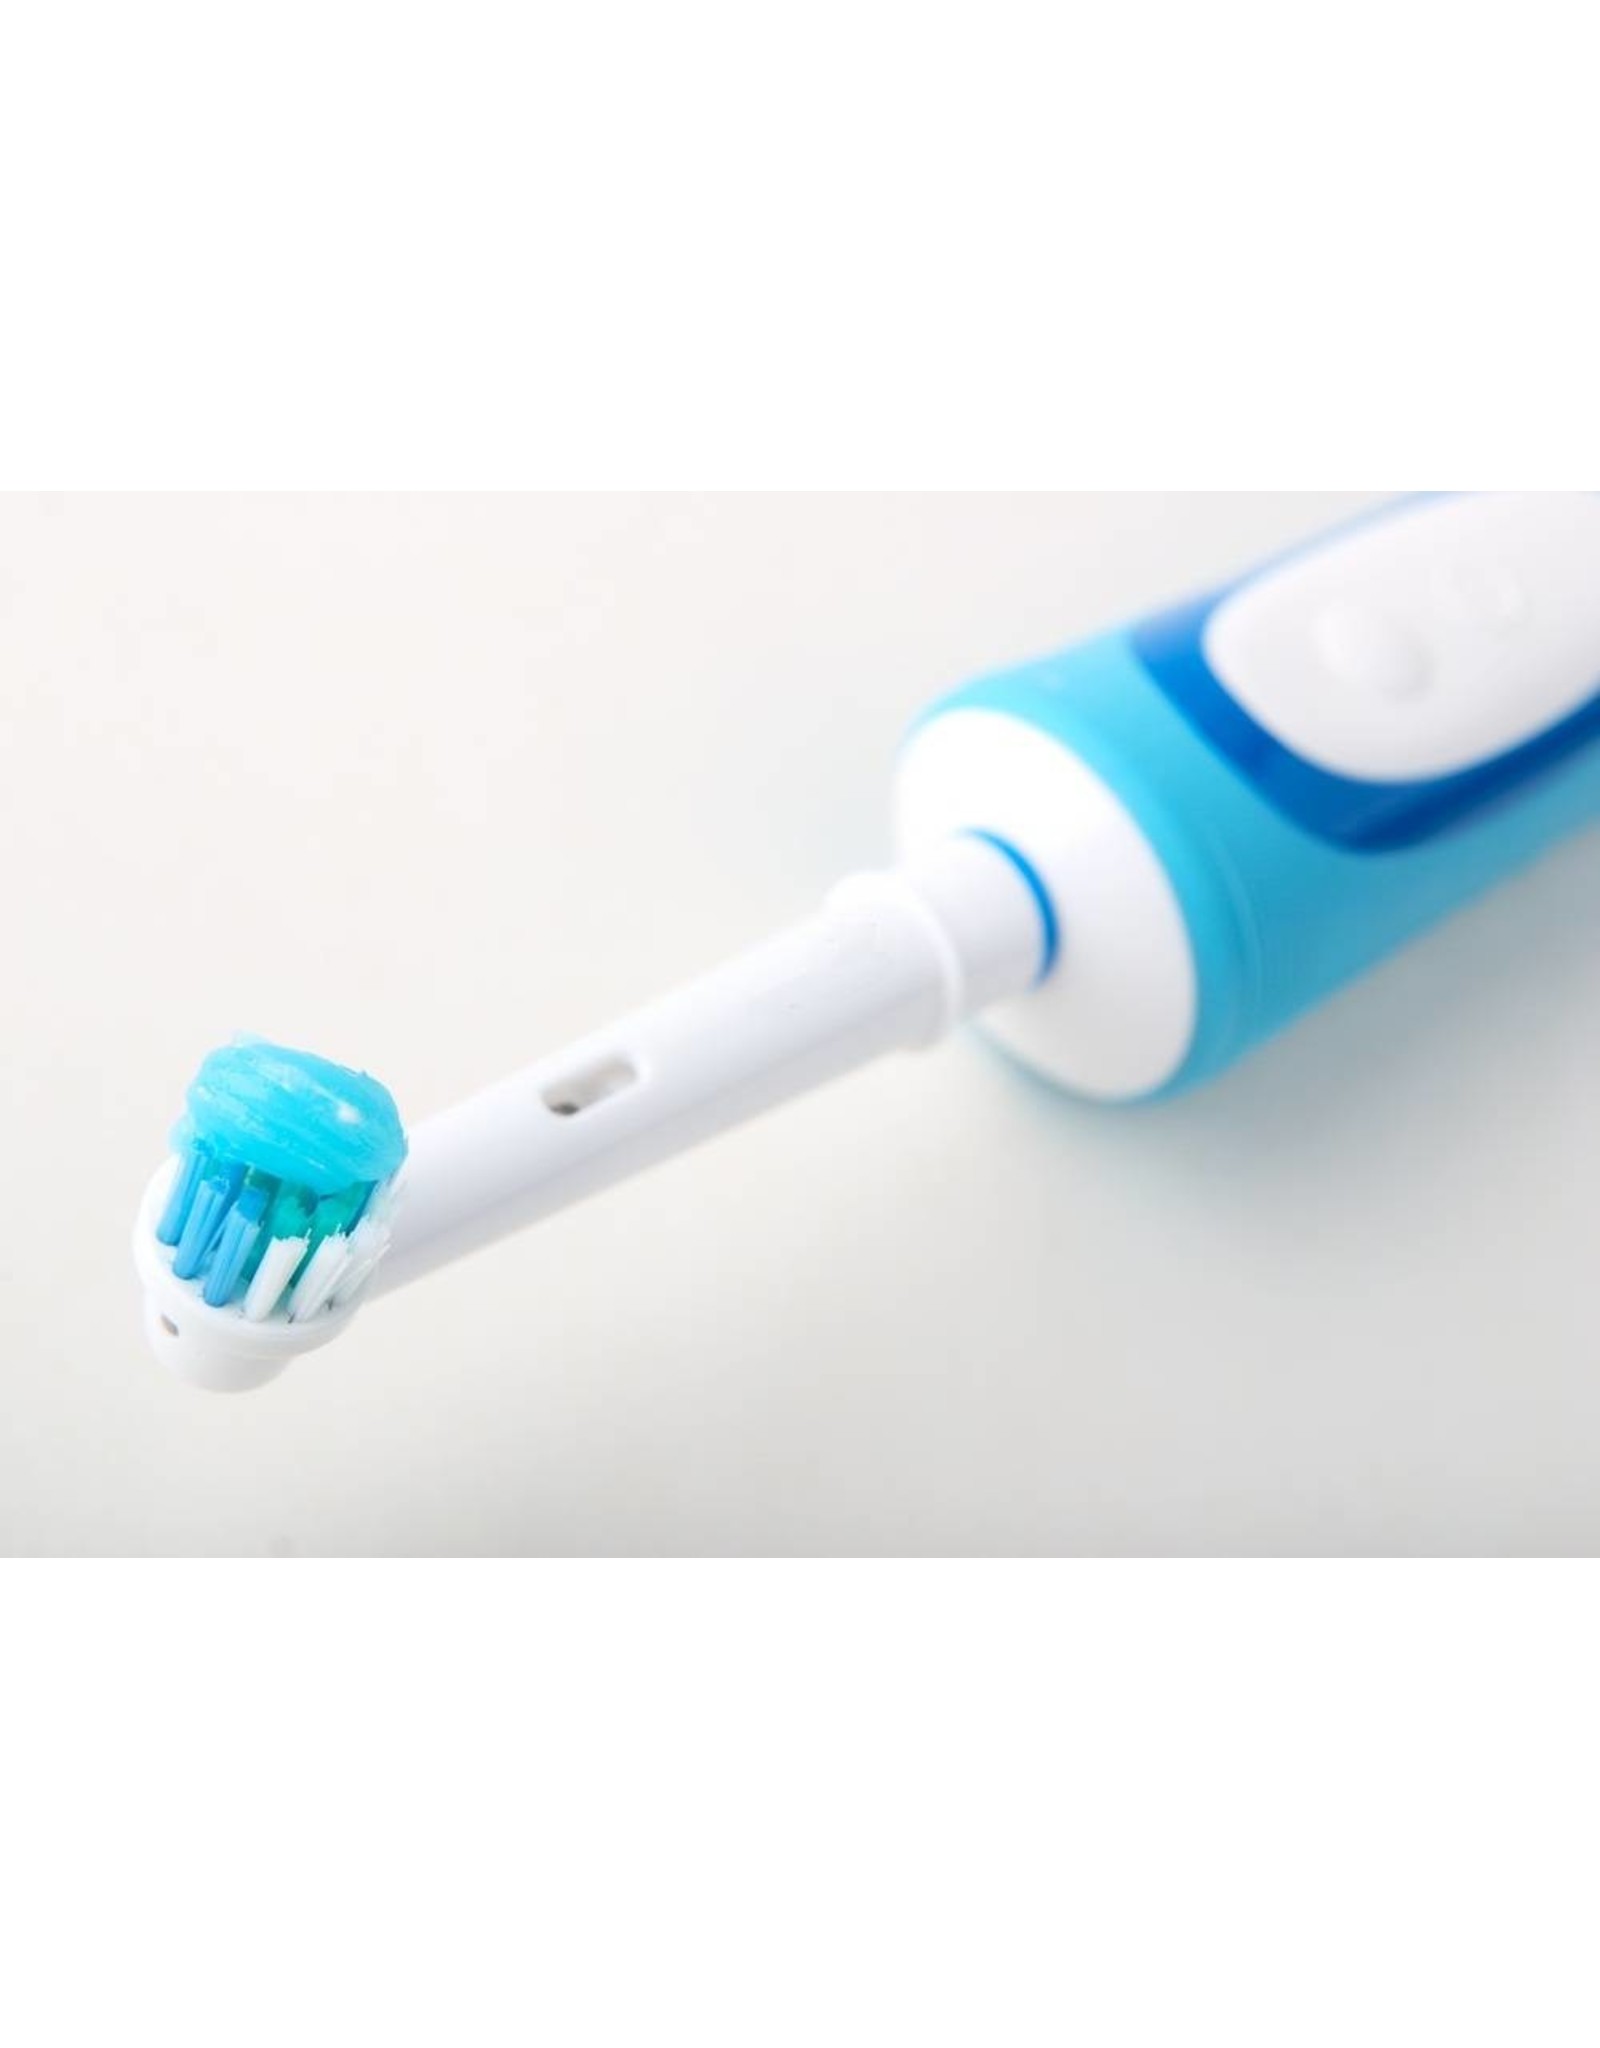 4 Aufsteckbürsten für elektrische Zahnbürsten von Oral-B  von Braun  Ersatzbürsten Aufsätze (kostenloser Versand)